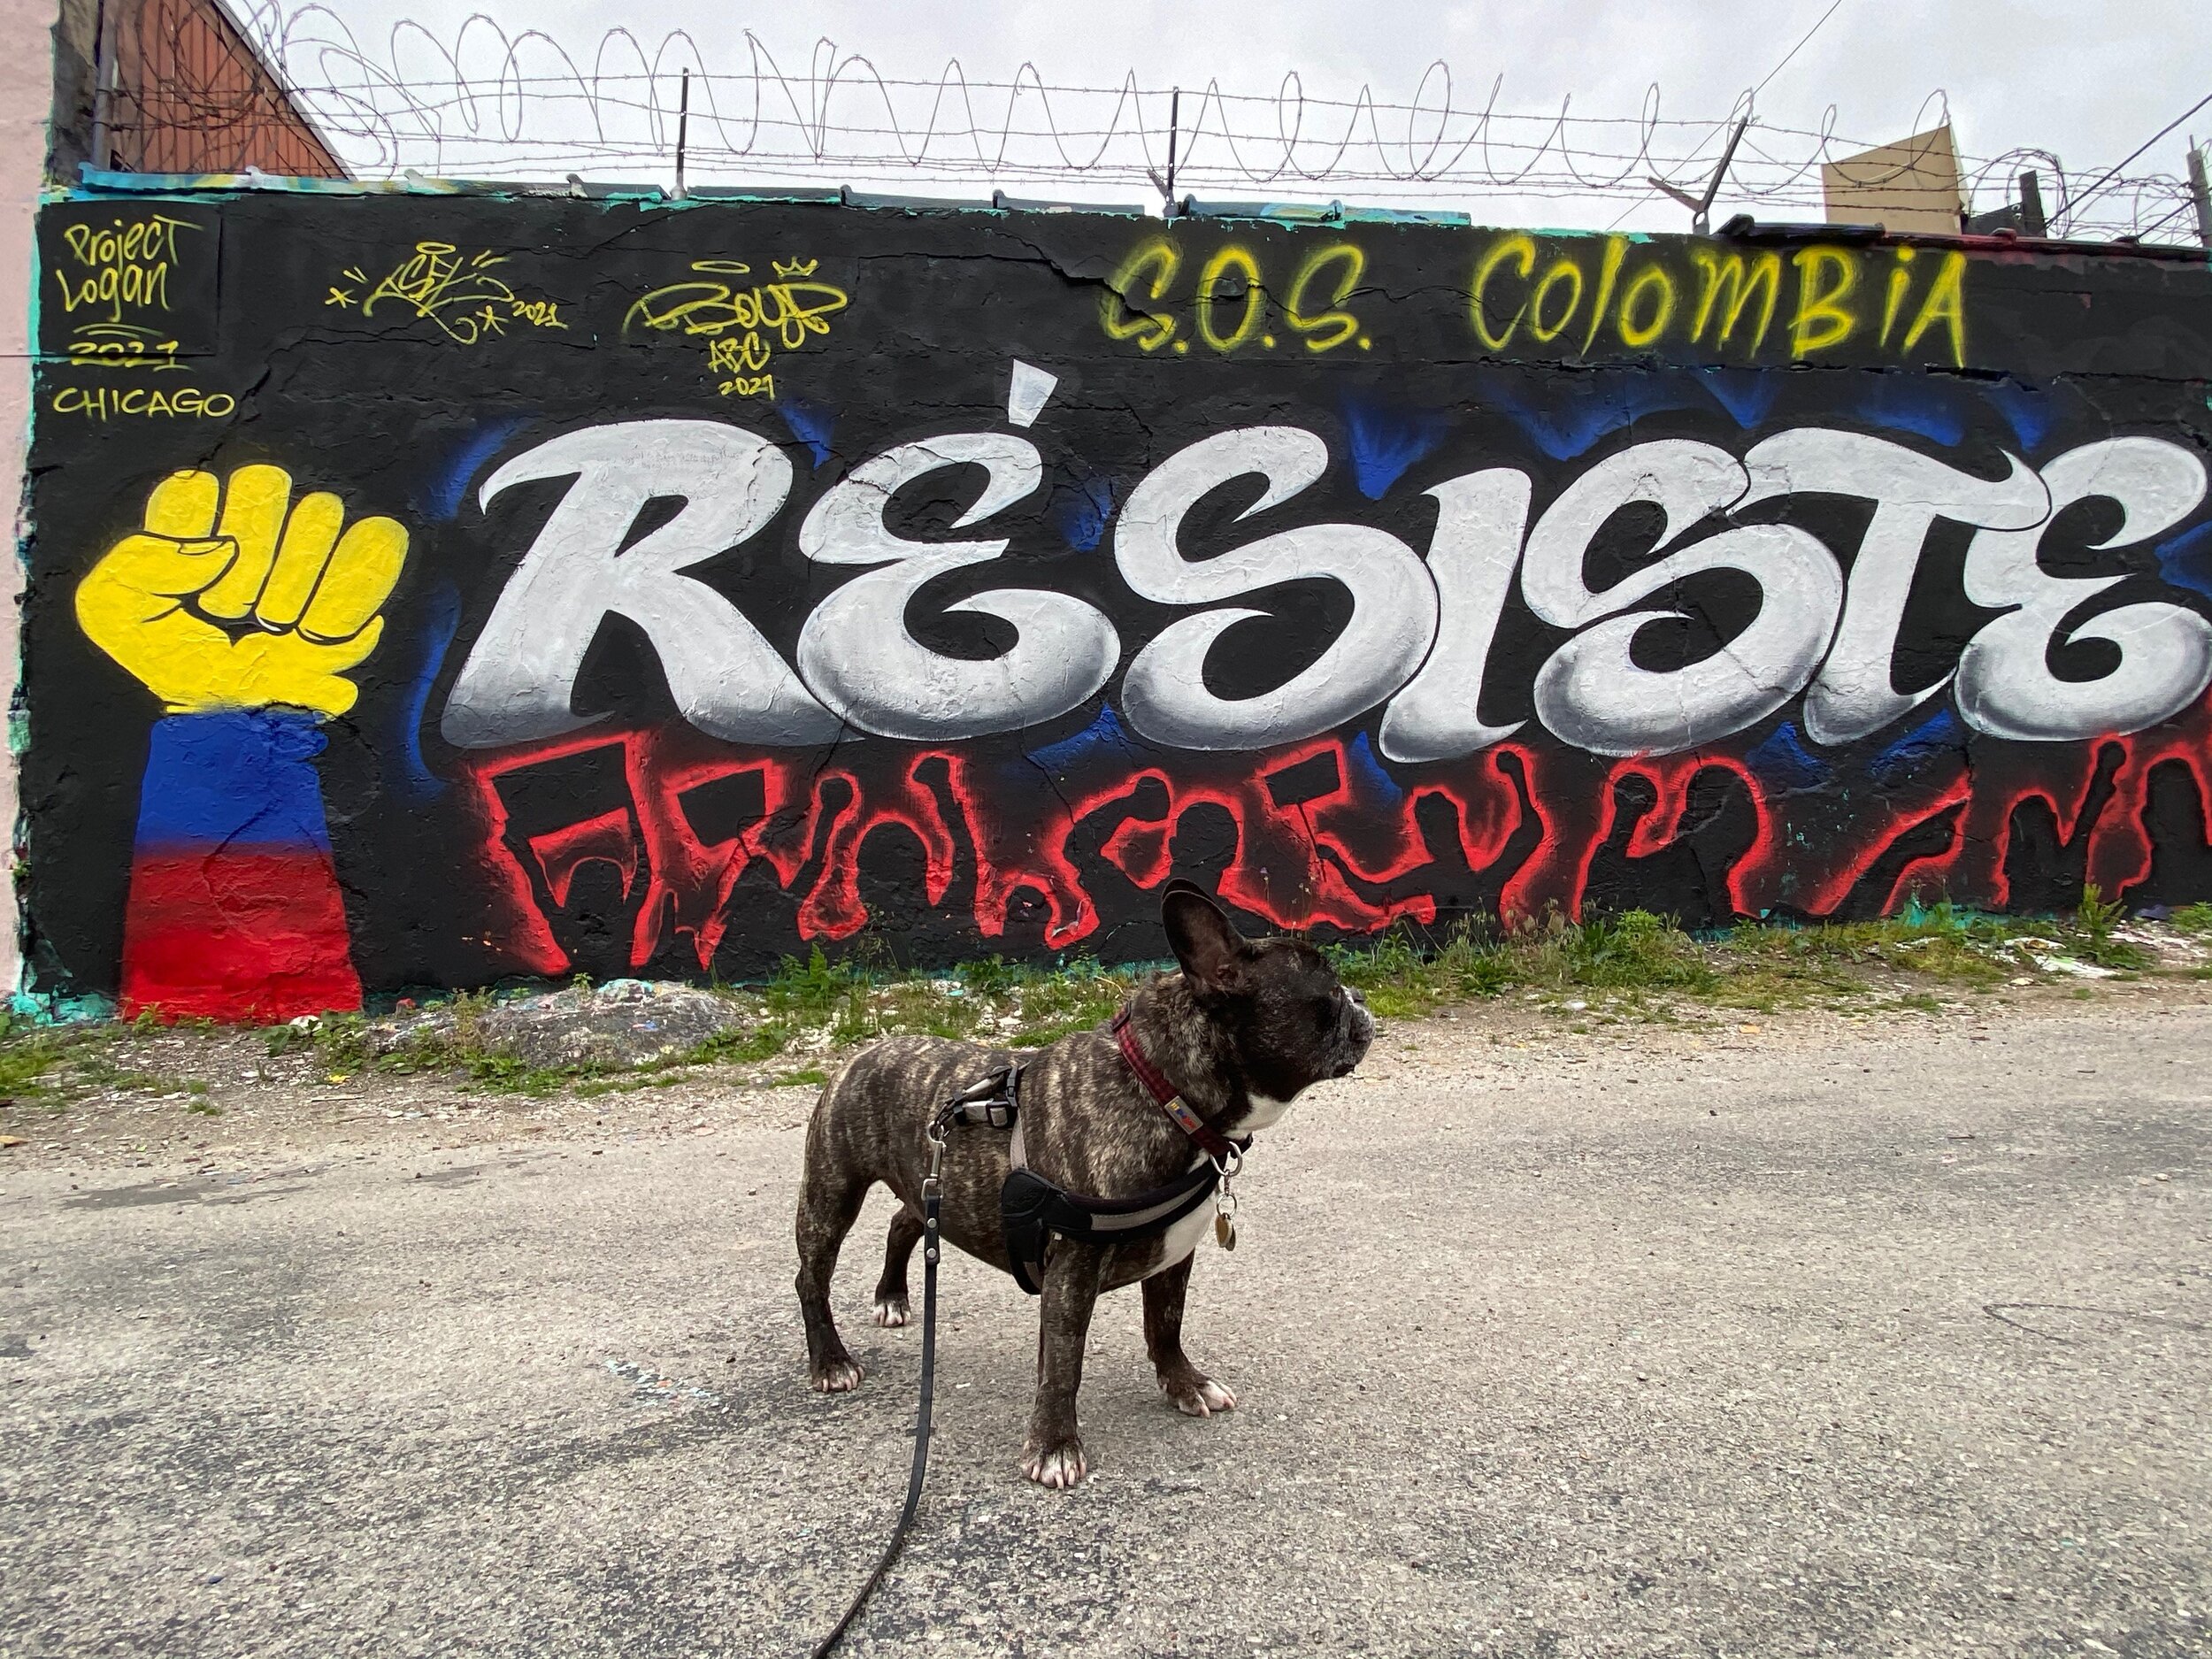 SOS Columbia Resiste Mural, Artist Unknown